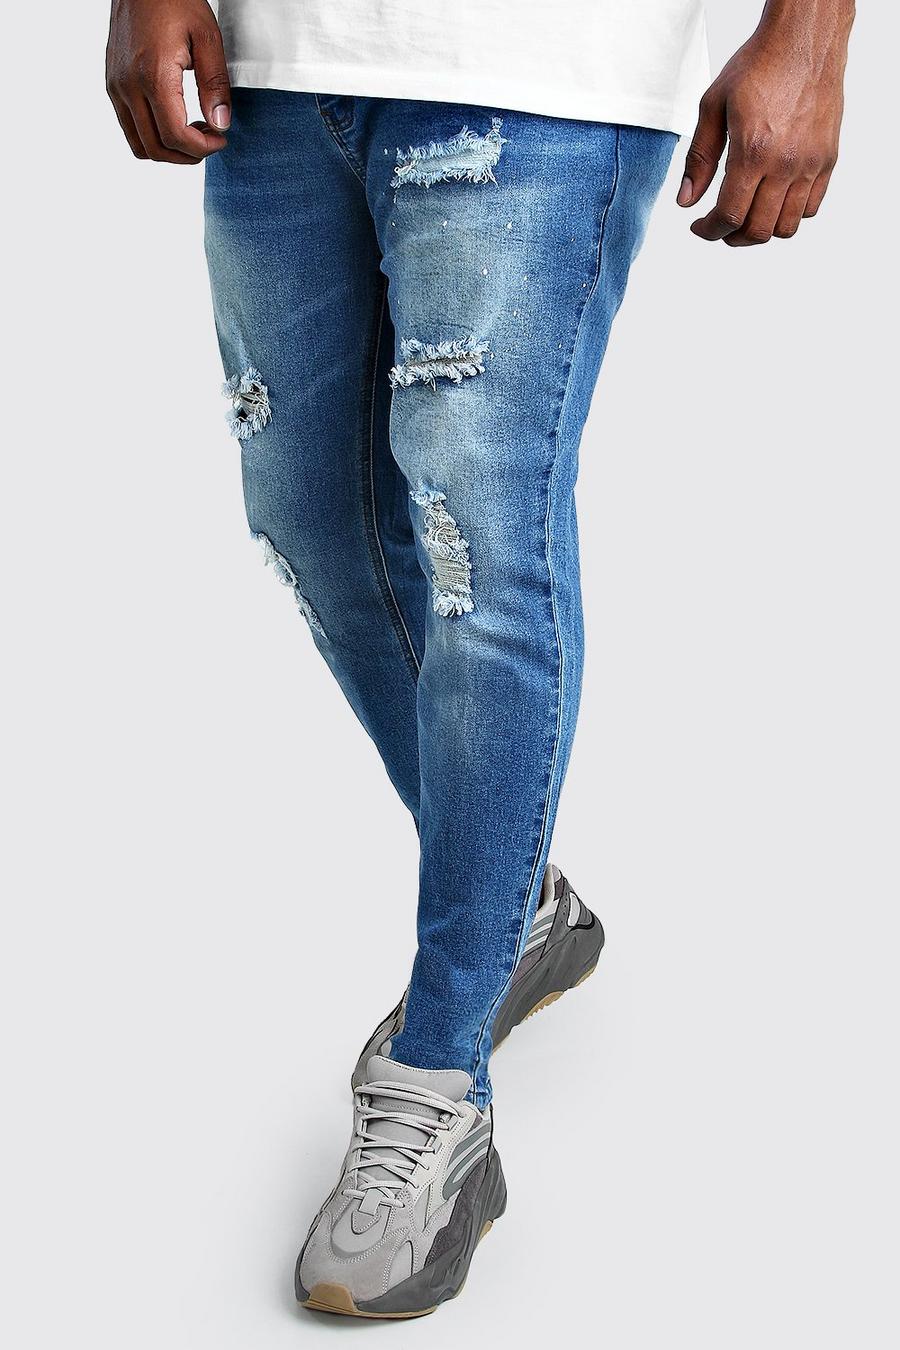 כחול ביניים azzurro סקיני ג'ינס עם כתמי צבע לגברים גדולים וגבוהים